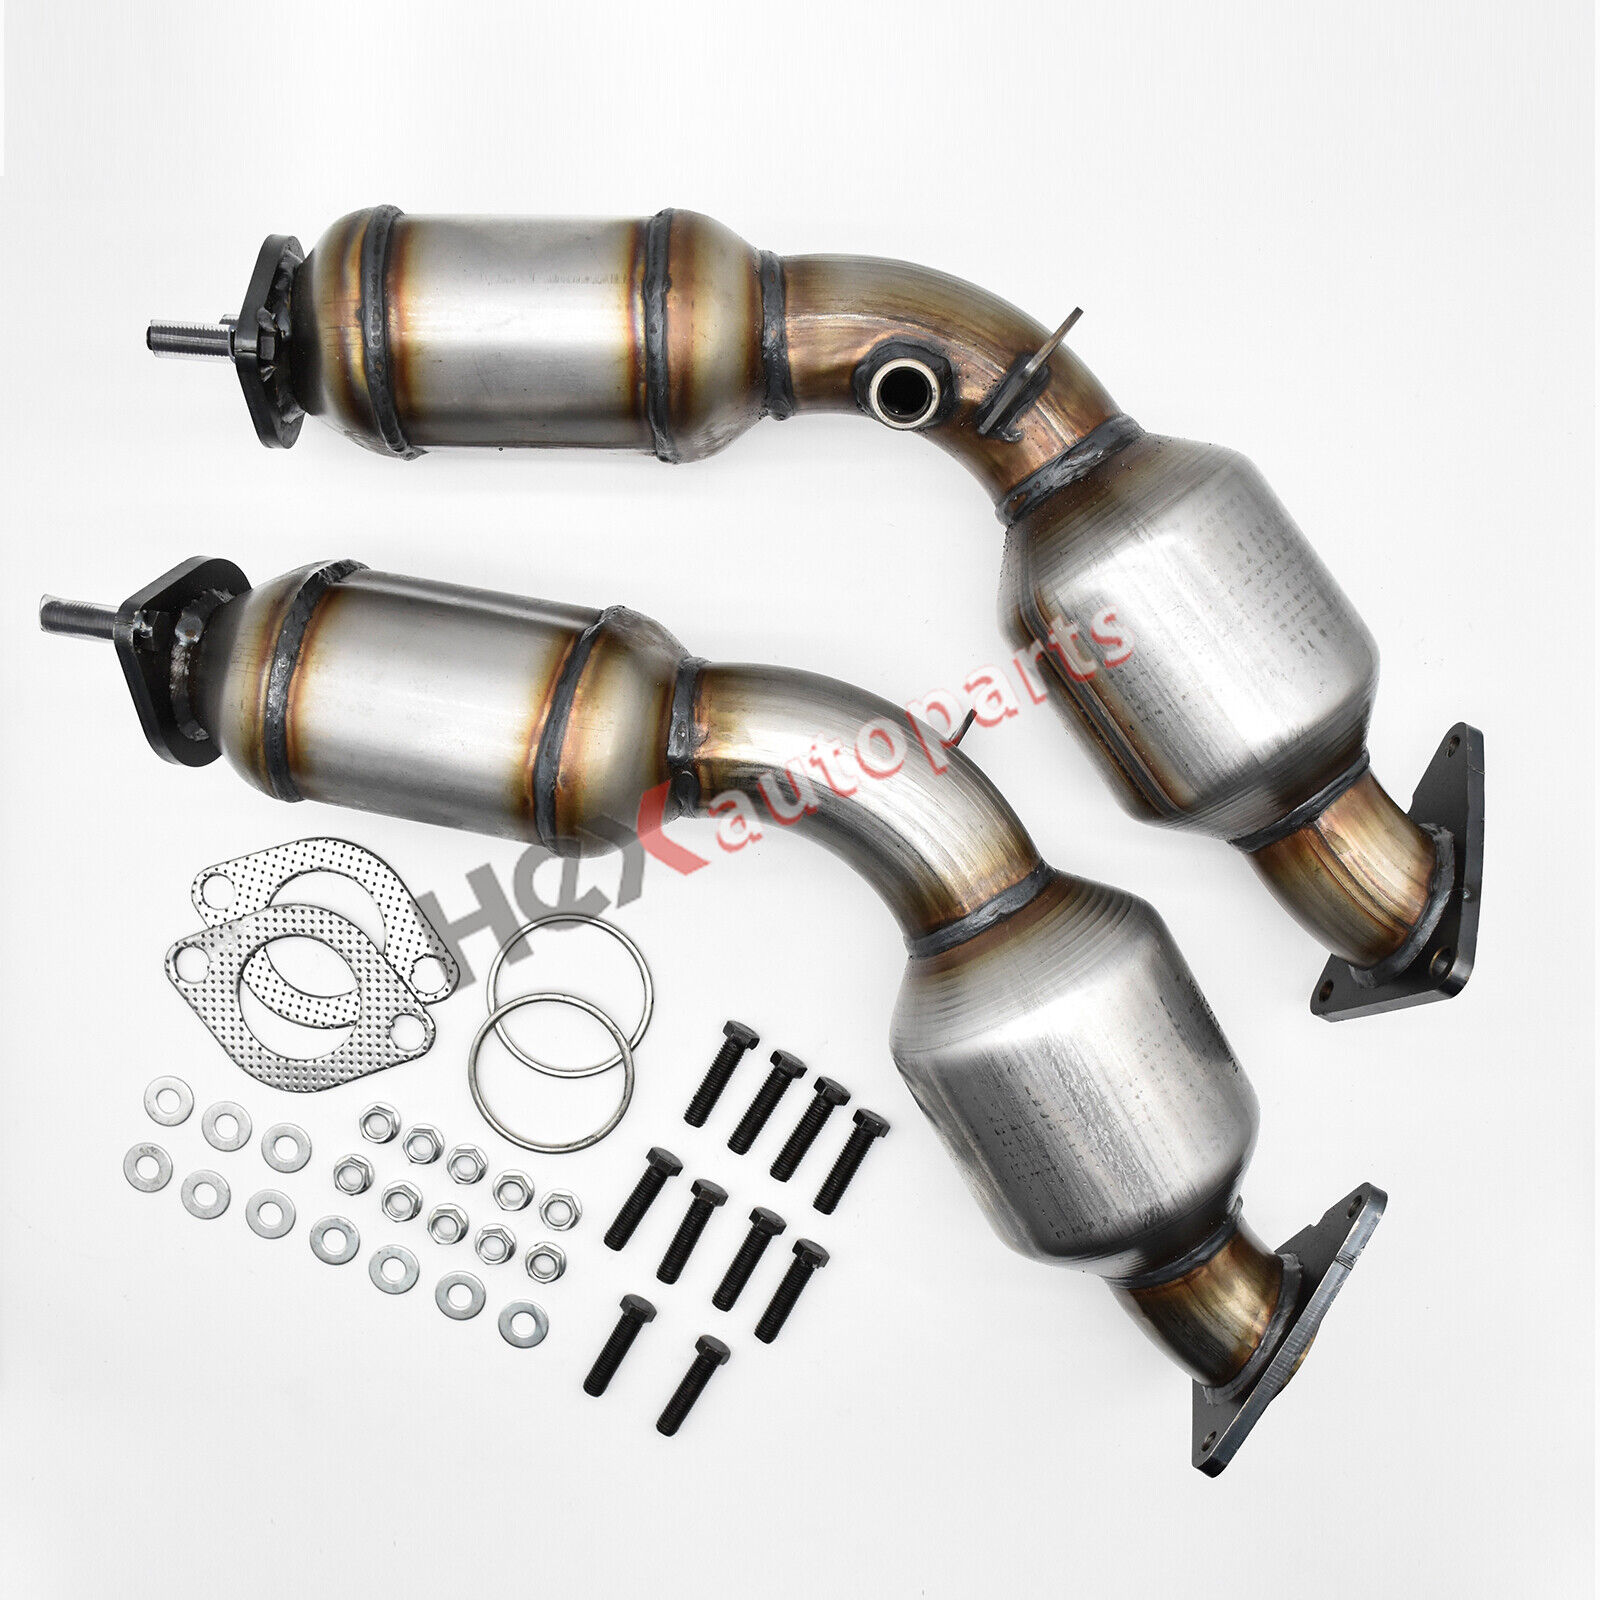 2pc Catalytic Converter for Infiniti G35 FX35 3.5L Nissan 350z  EPA